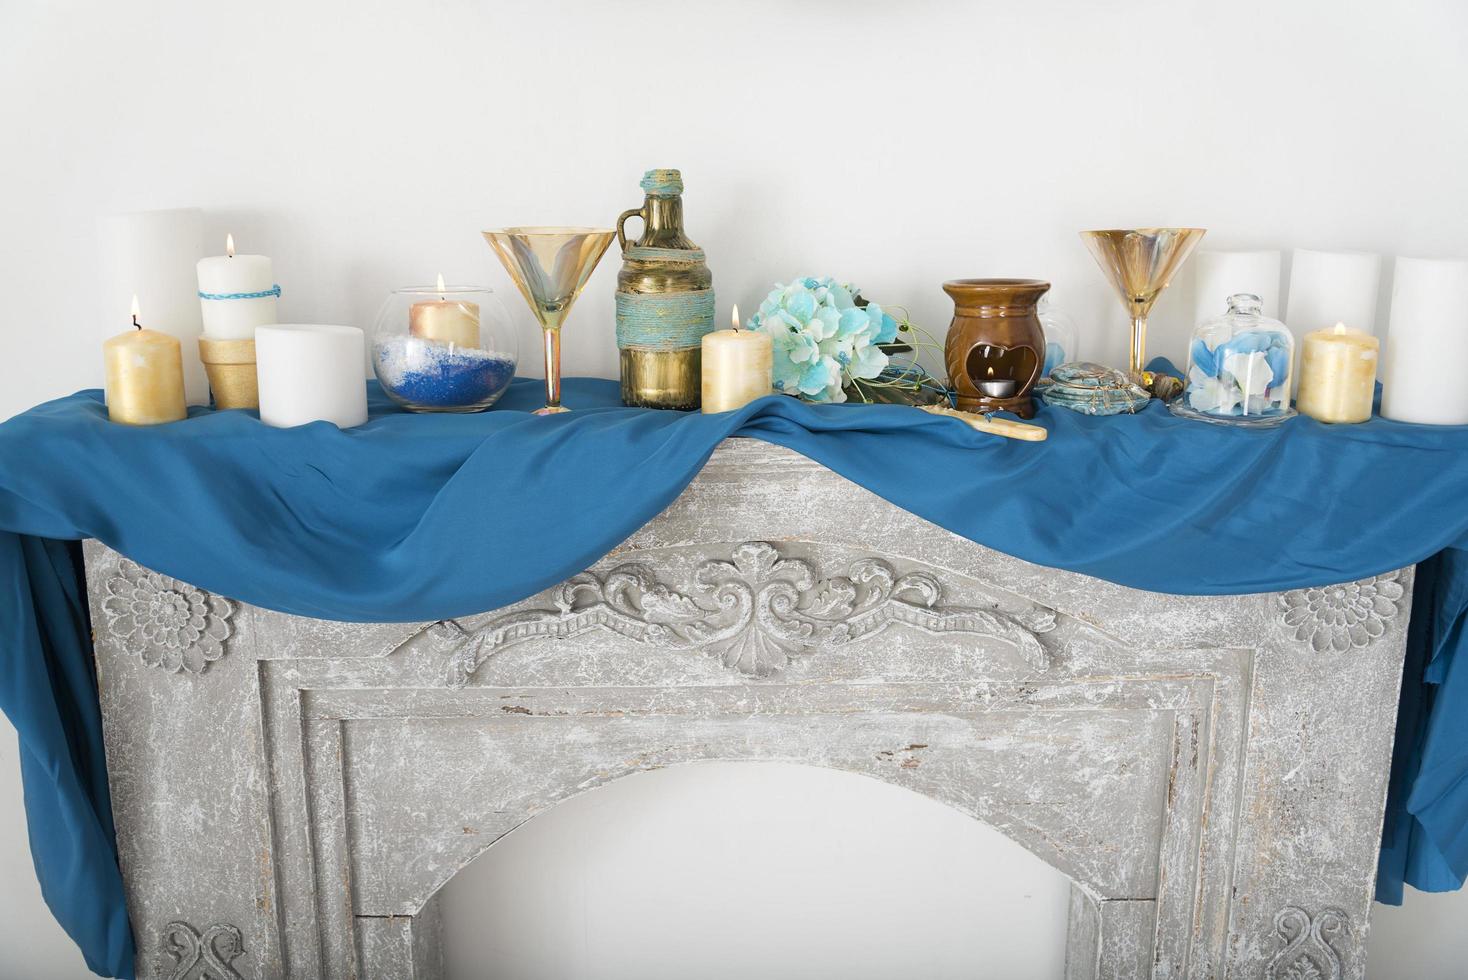 eine Kerze, ein Spiegel auf einem blauen Tuch. foto